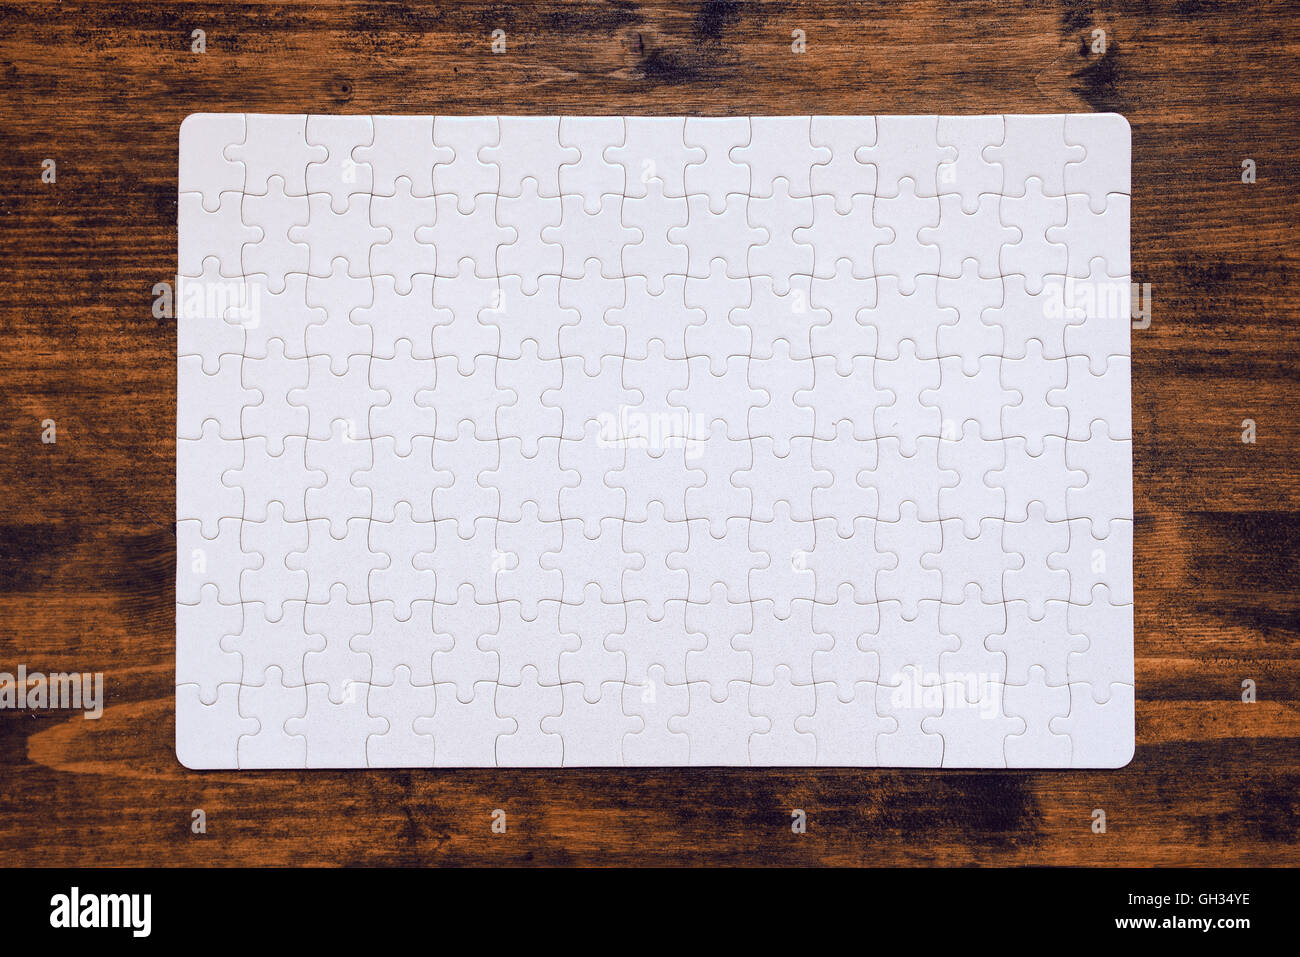 Completato puzzle come copia di spazio disposto sulla scrivania in legno, vista dall'alto Foto Stock